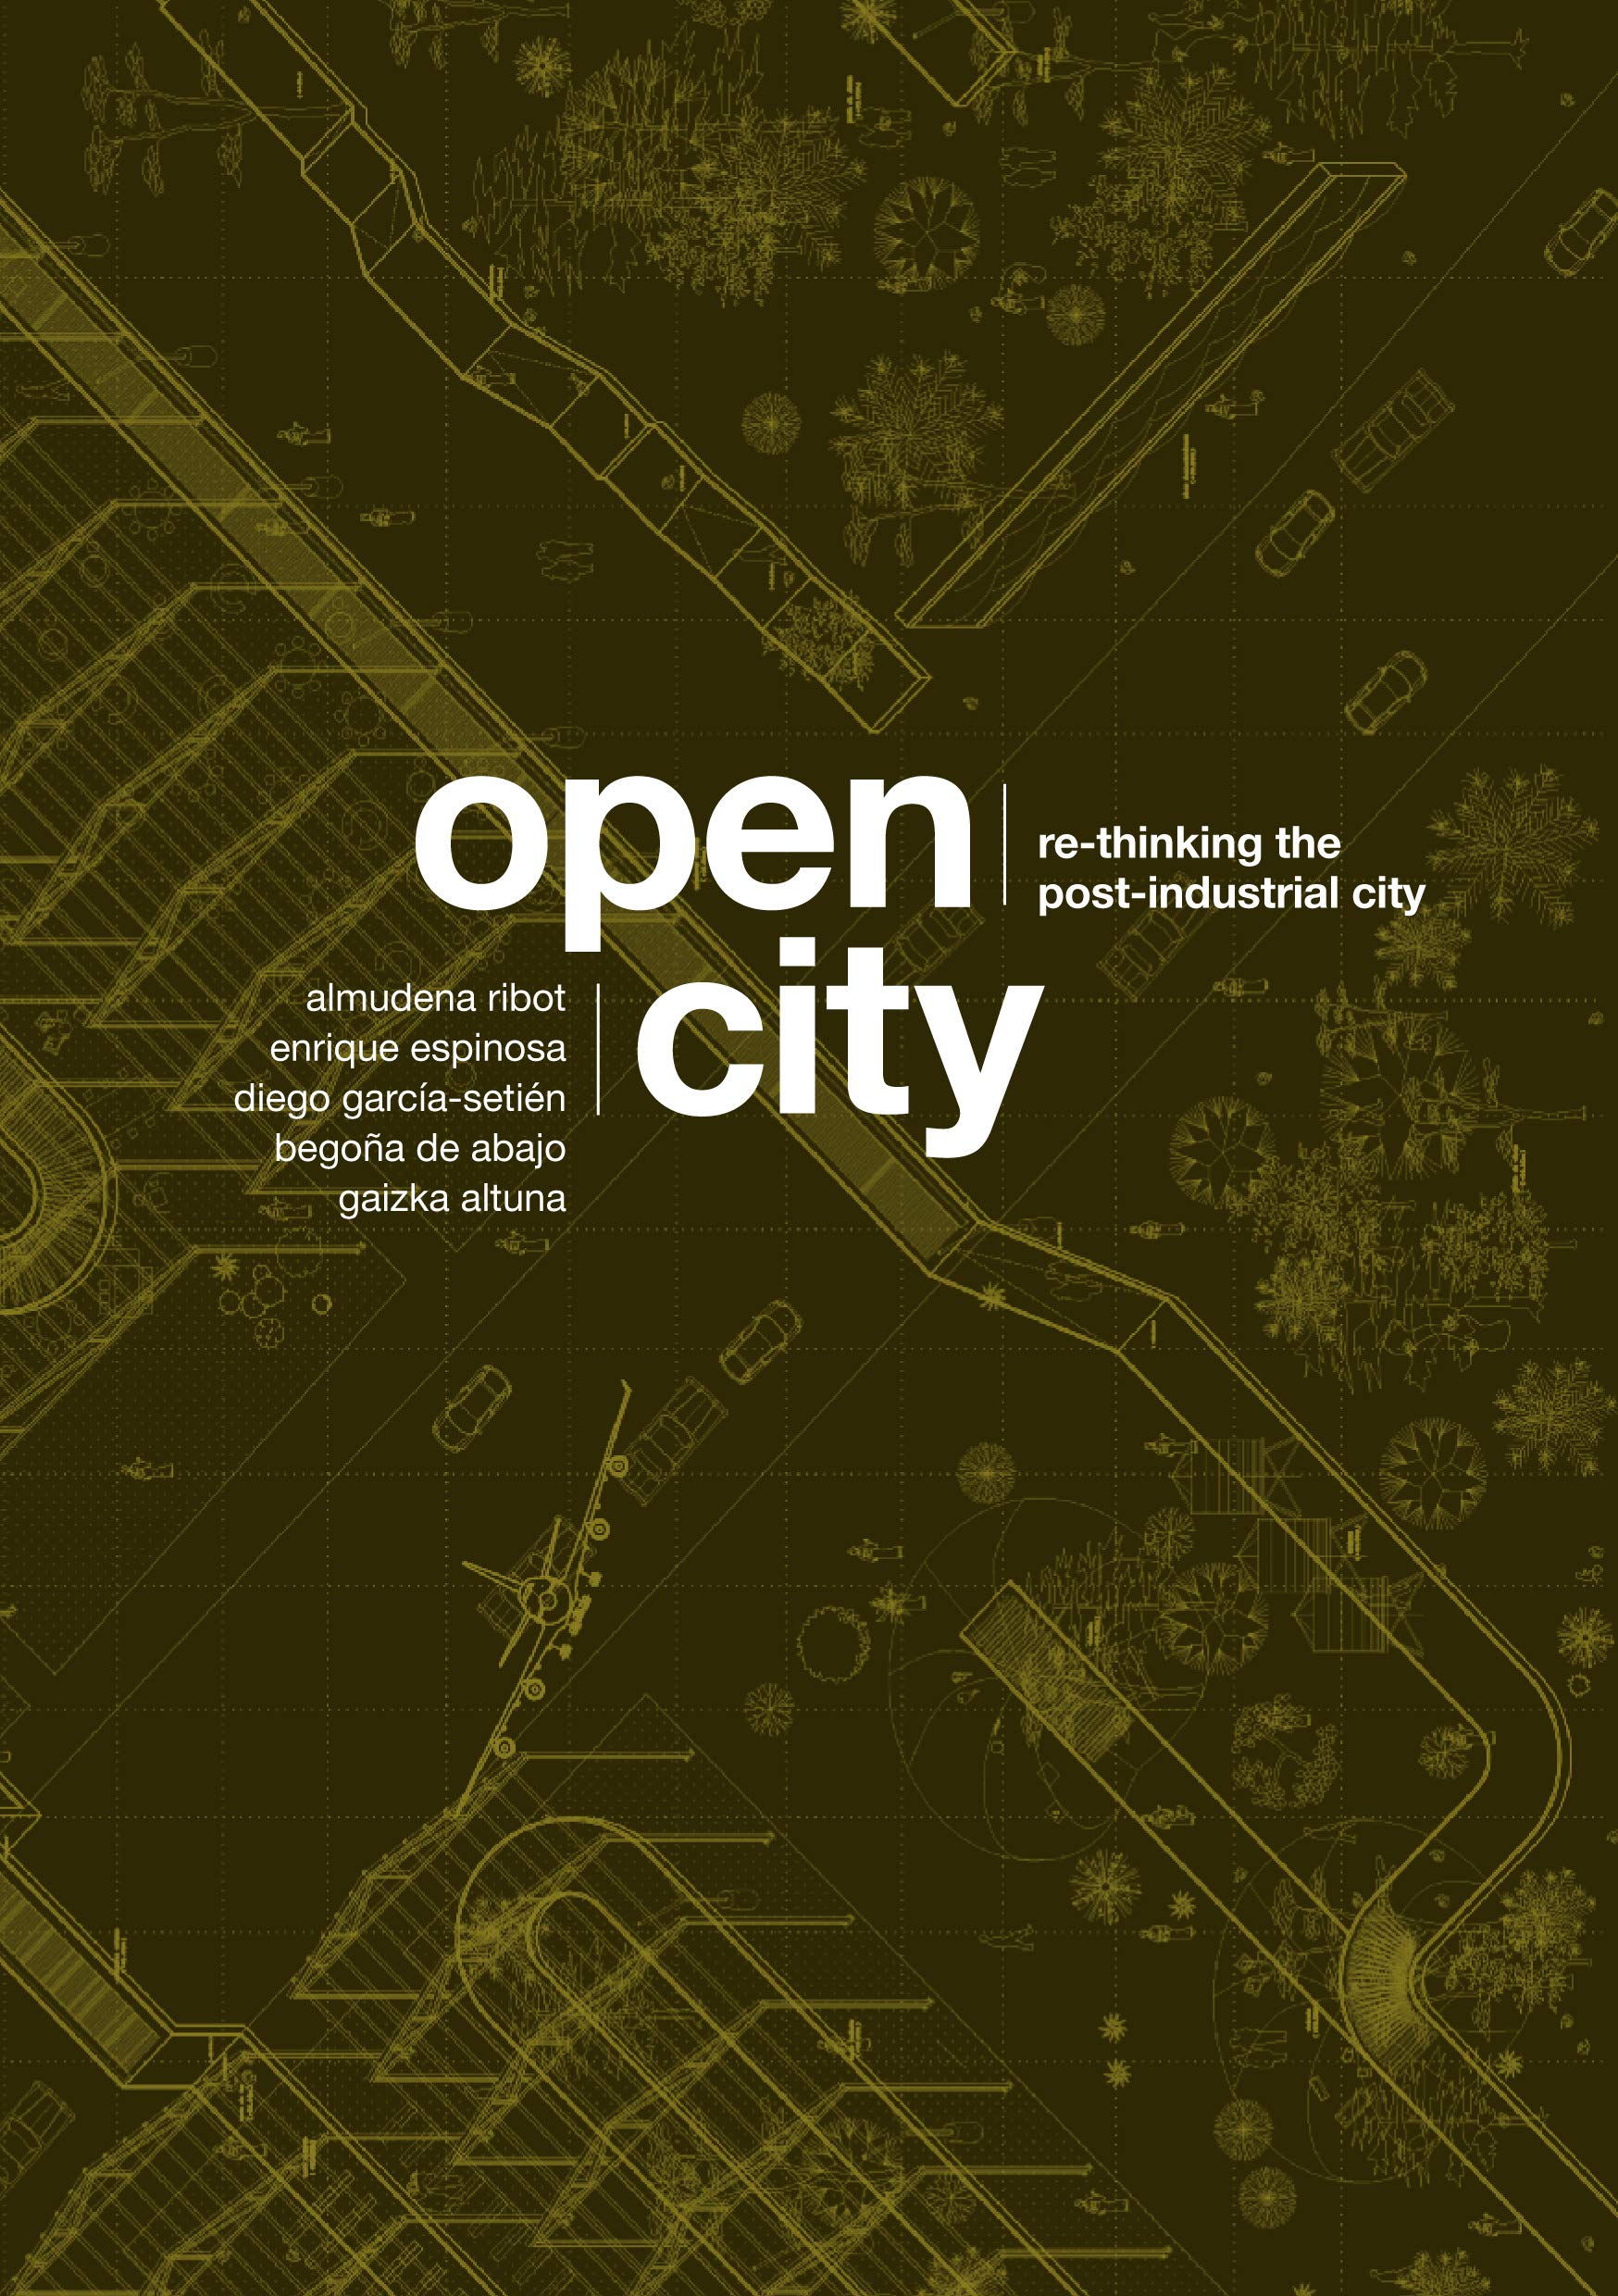 Open City | Almudena Ribot, Enrique Espinosa, Diego Garcia-Setien, Begona de Abajo, Gaizka Altuna